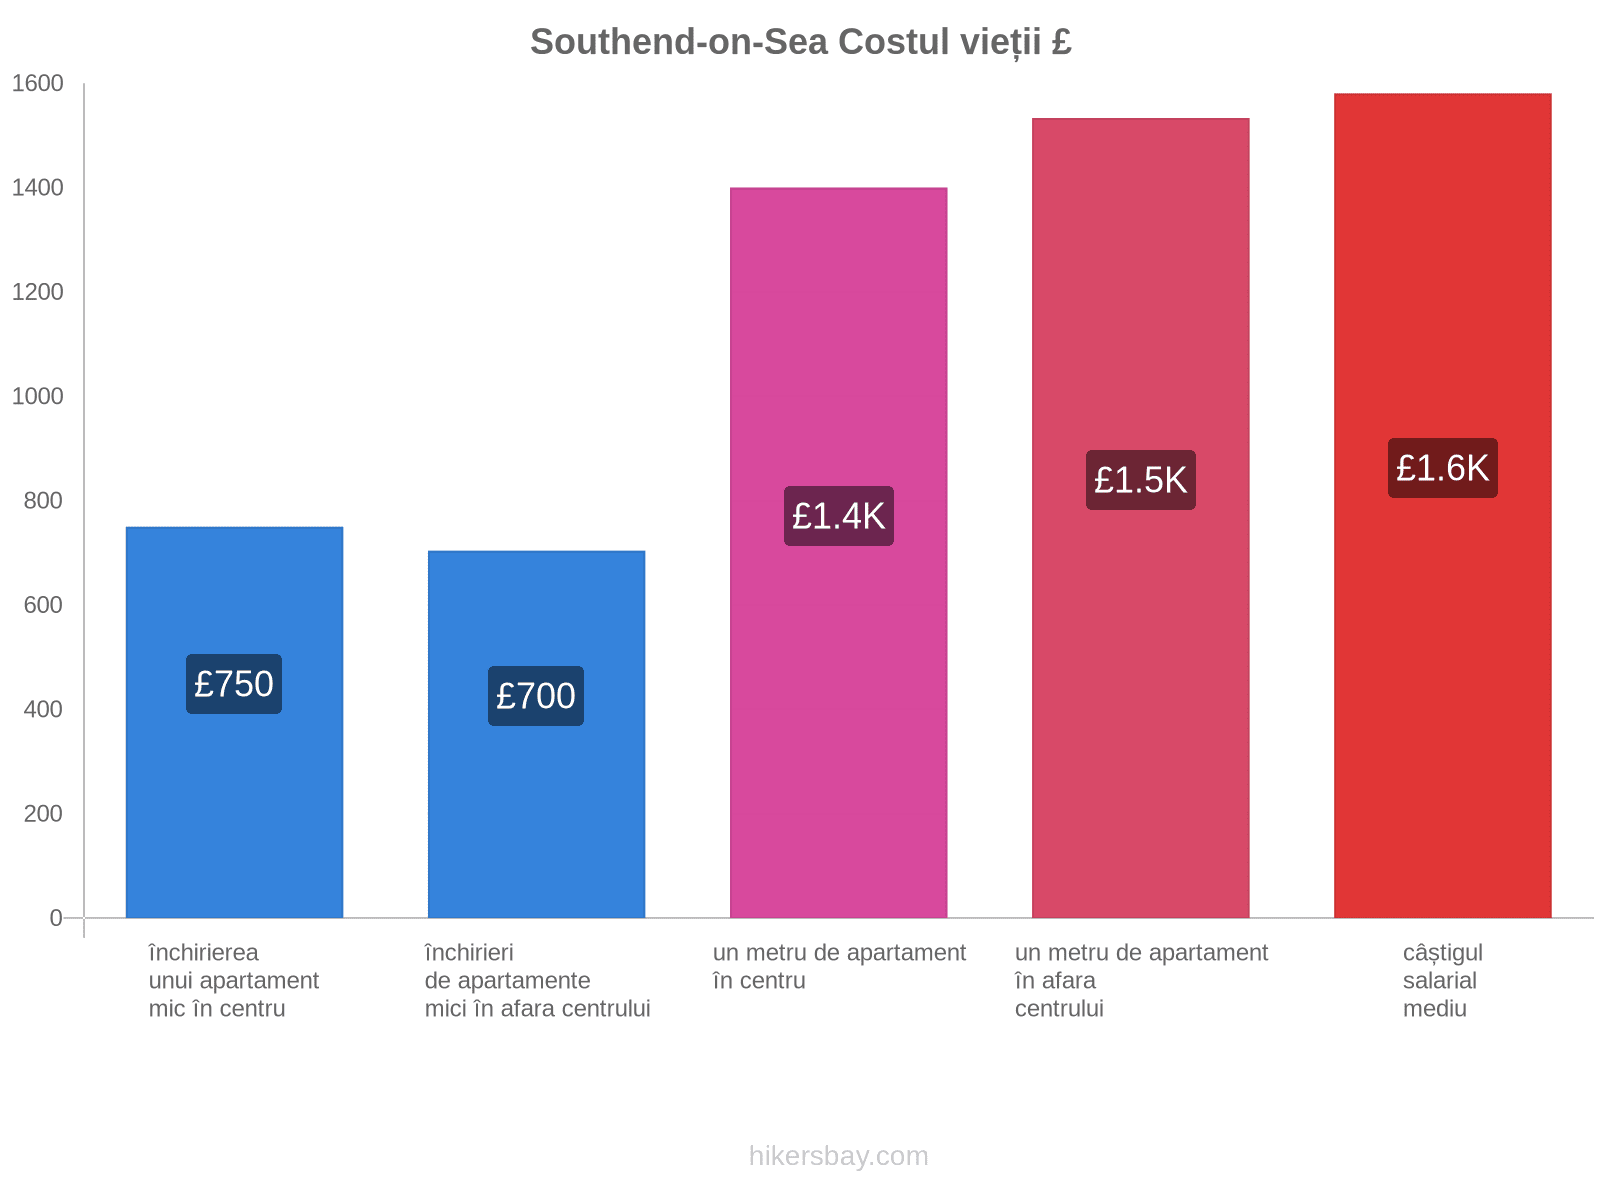 Southend-on-Sea costul vieții hikersbay.com